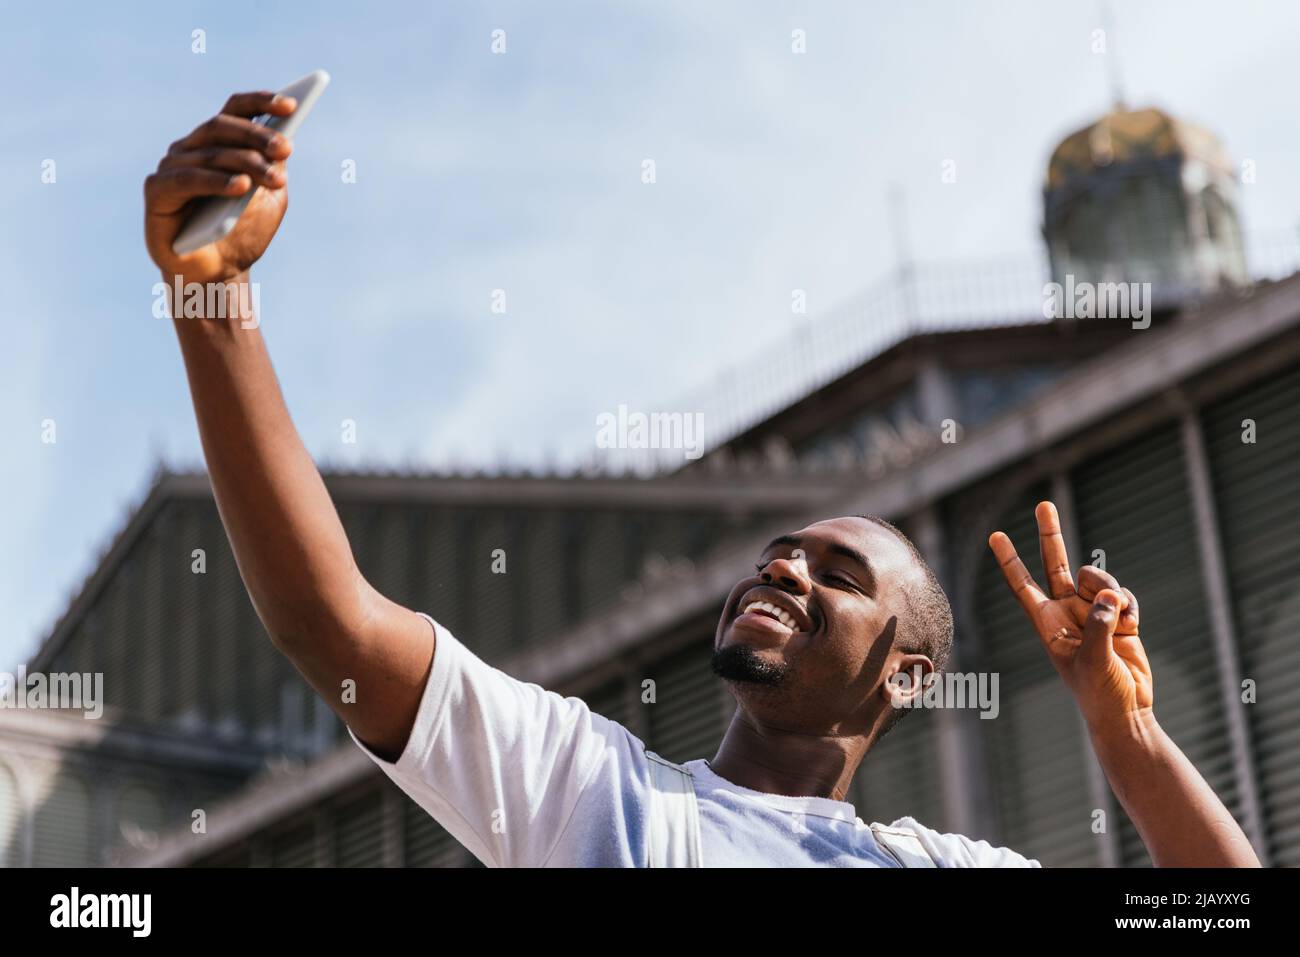 Von unten glücklicher junger afroamerikanischer männlicher Tourist. Er zeigt zwei Finger und lächelt hell, während er am sonnigen Tag Selfie auf dem Smartphone gegen die Kirche macht Stockfoto